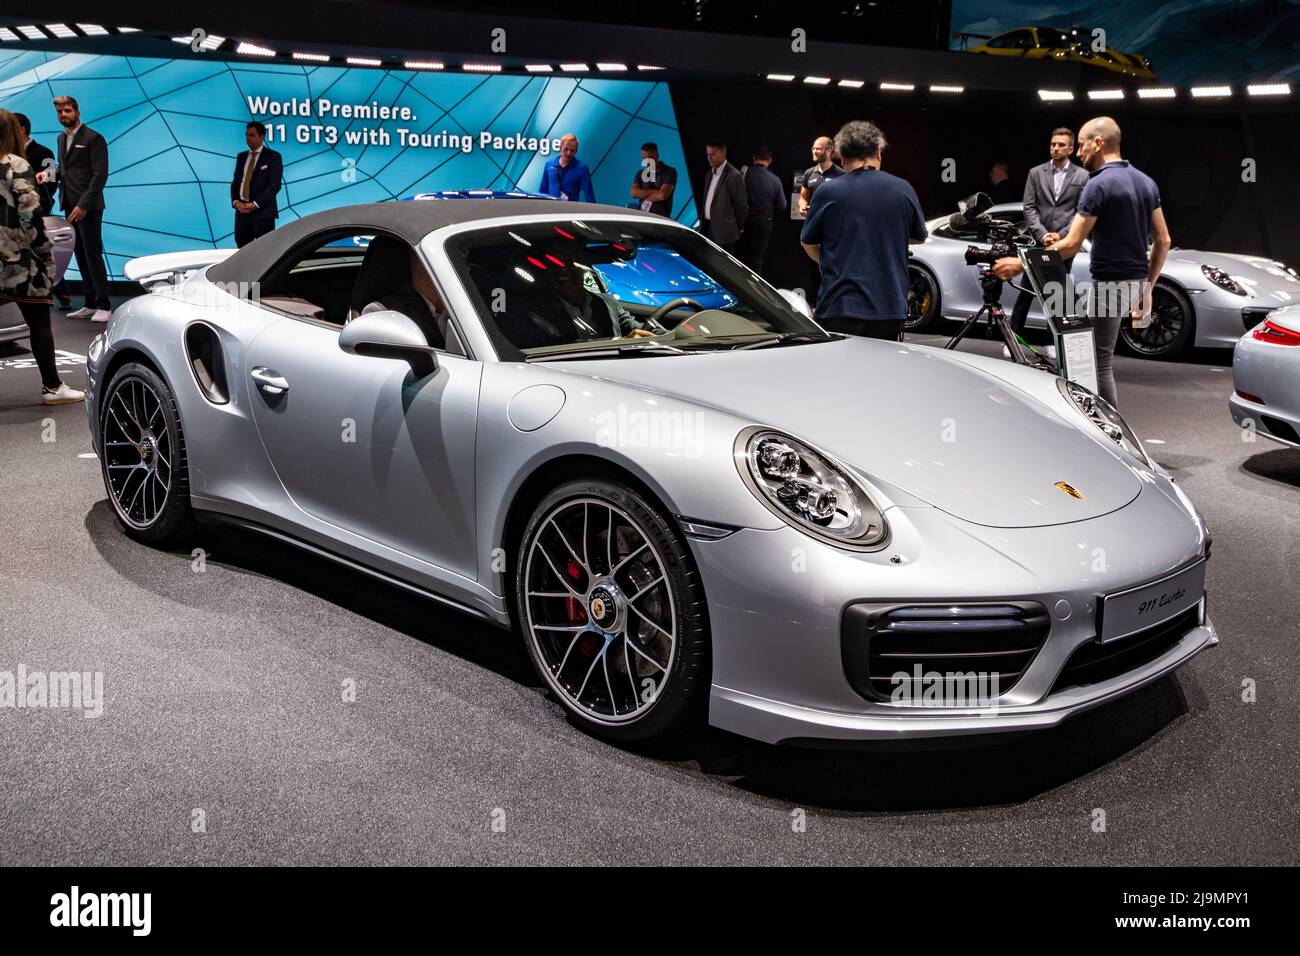 Porsche 911 Turbo sports car at the Frankfurt IAA Motor Show. Germany - September 12, 2017. Stock Photo